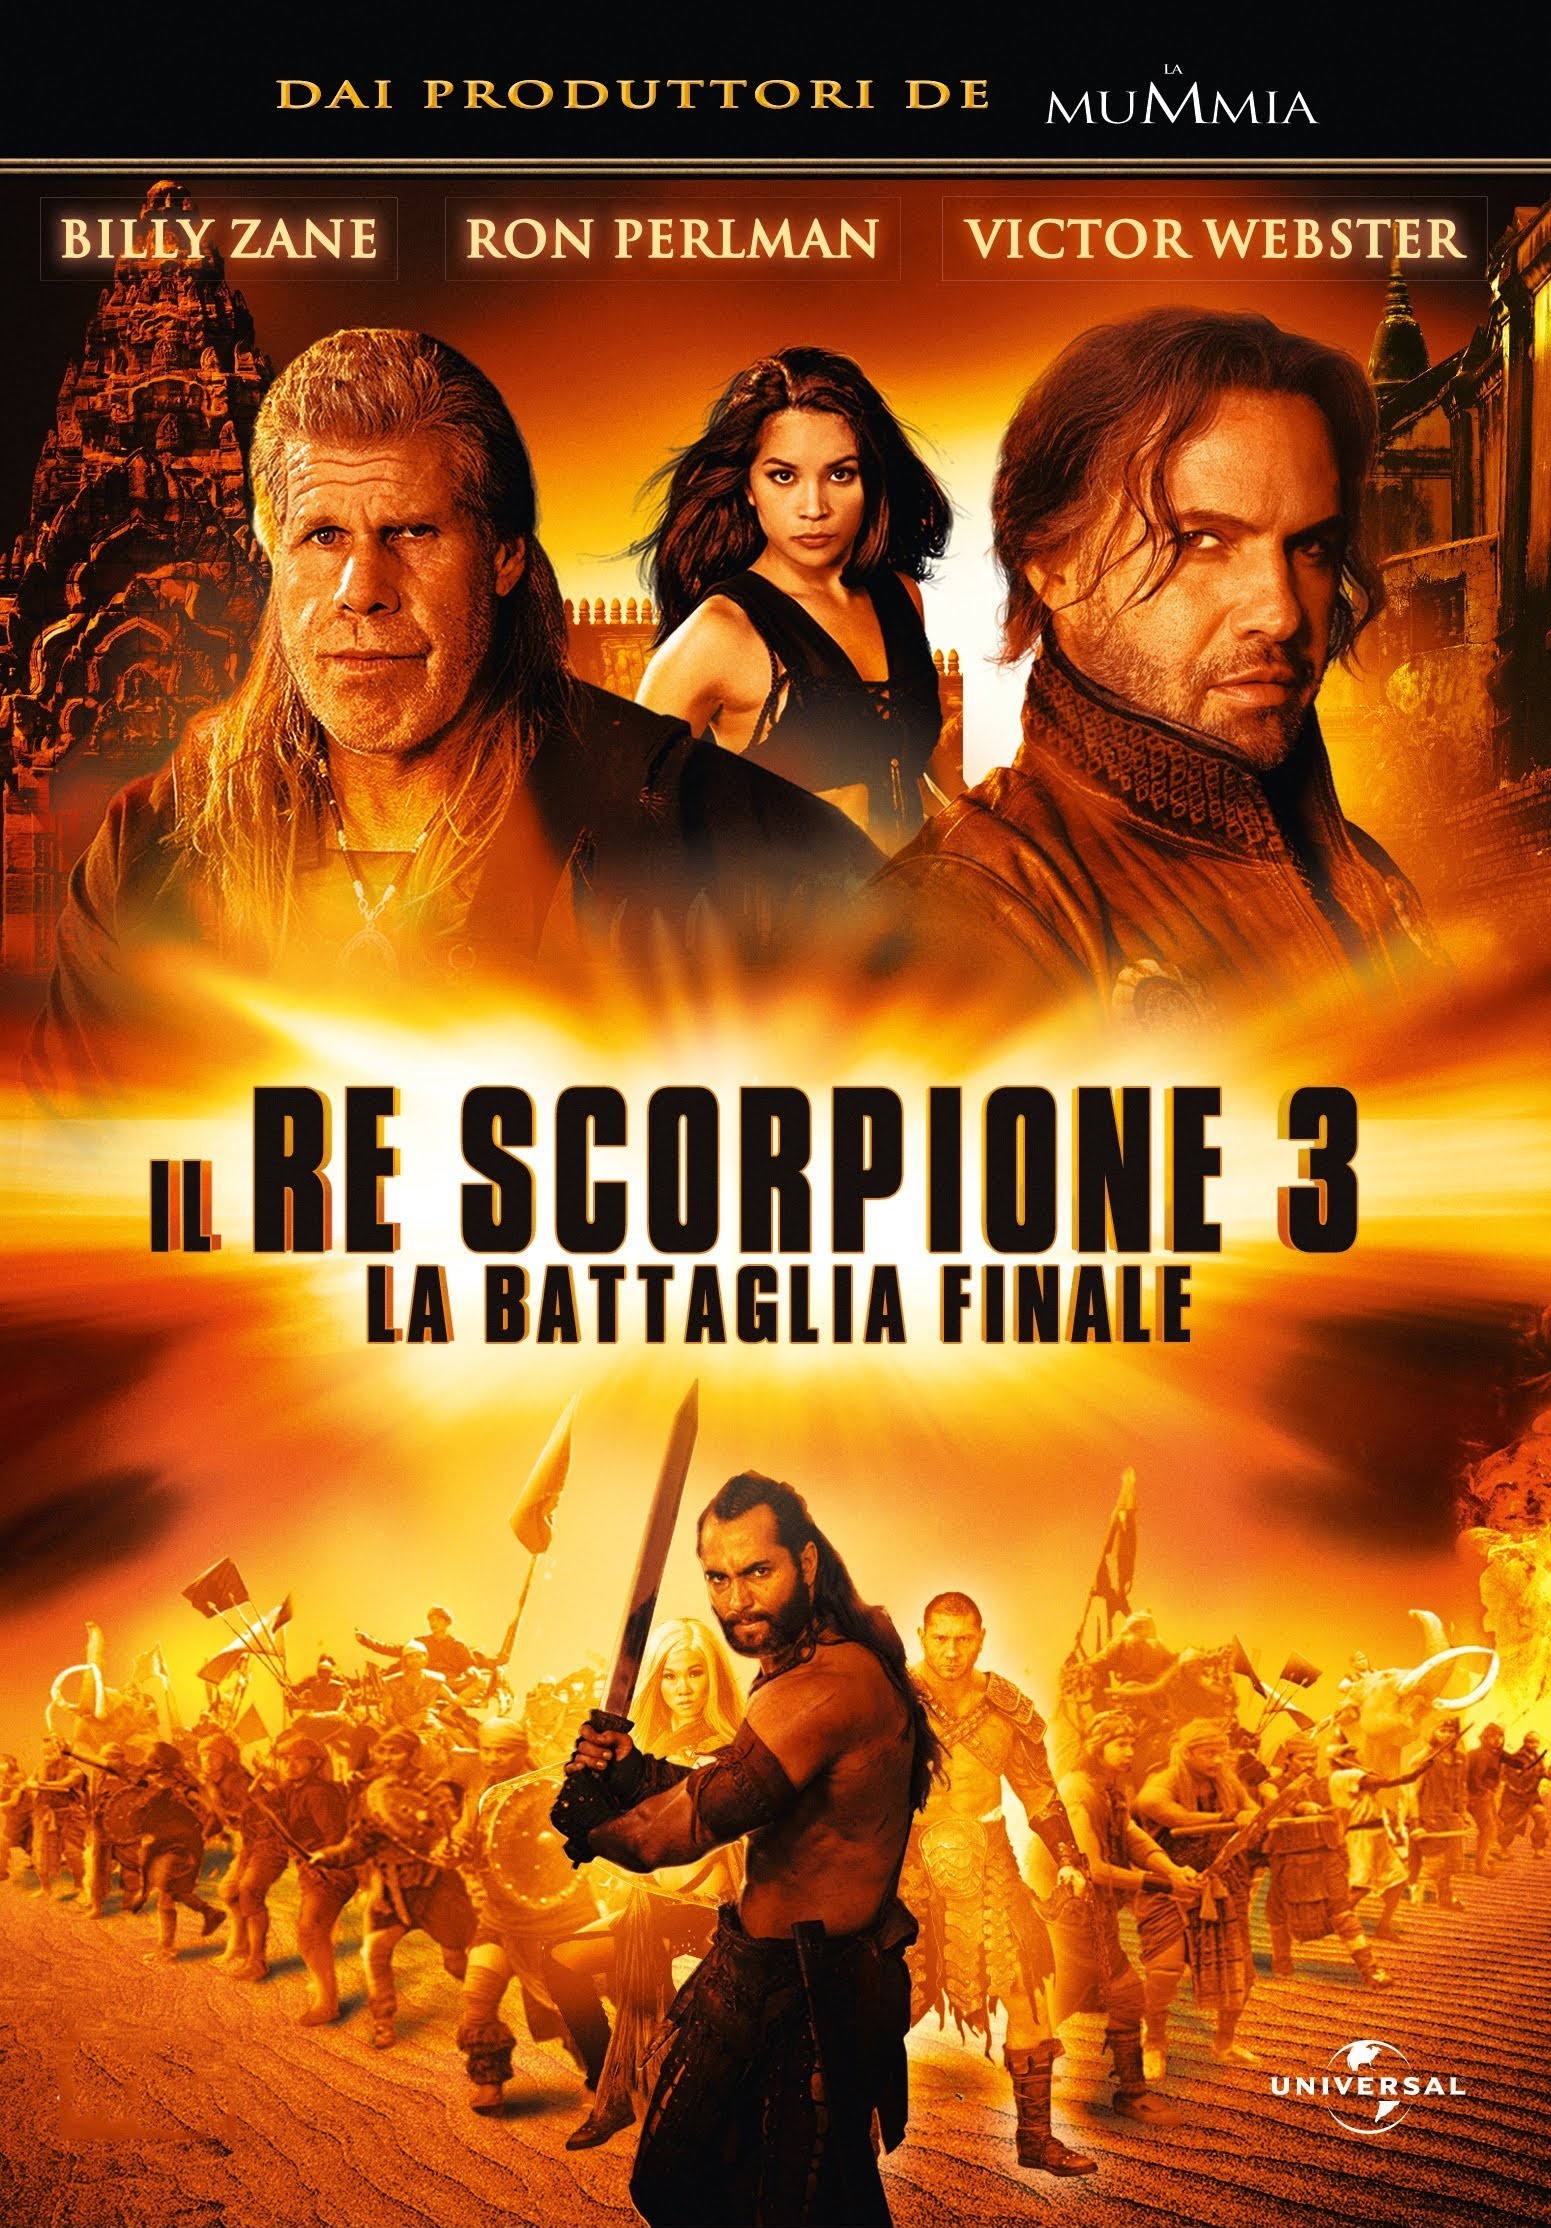 Il Re Scorpione 3 – La battaglia finale [HD] (2012)